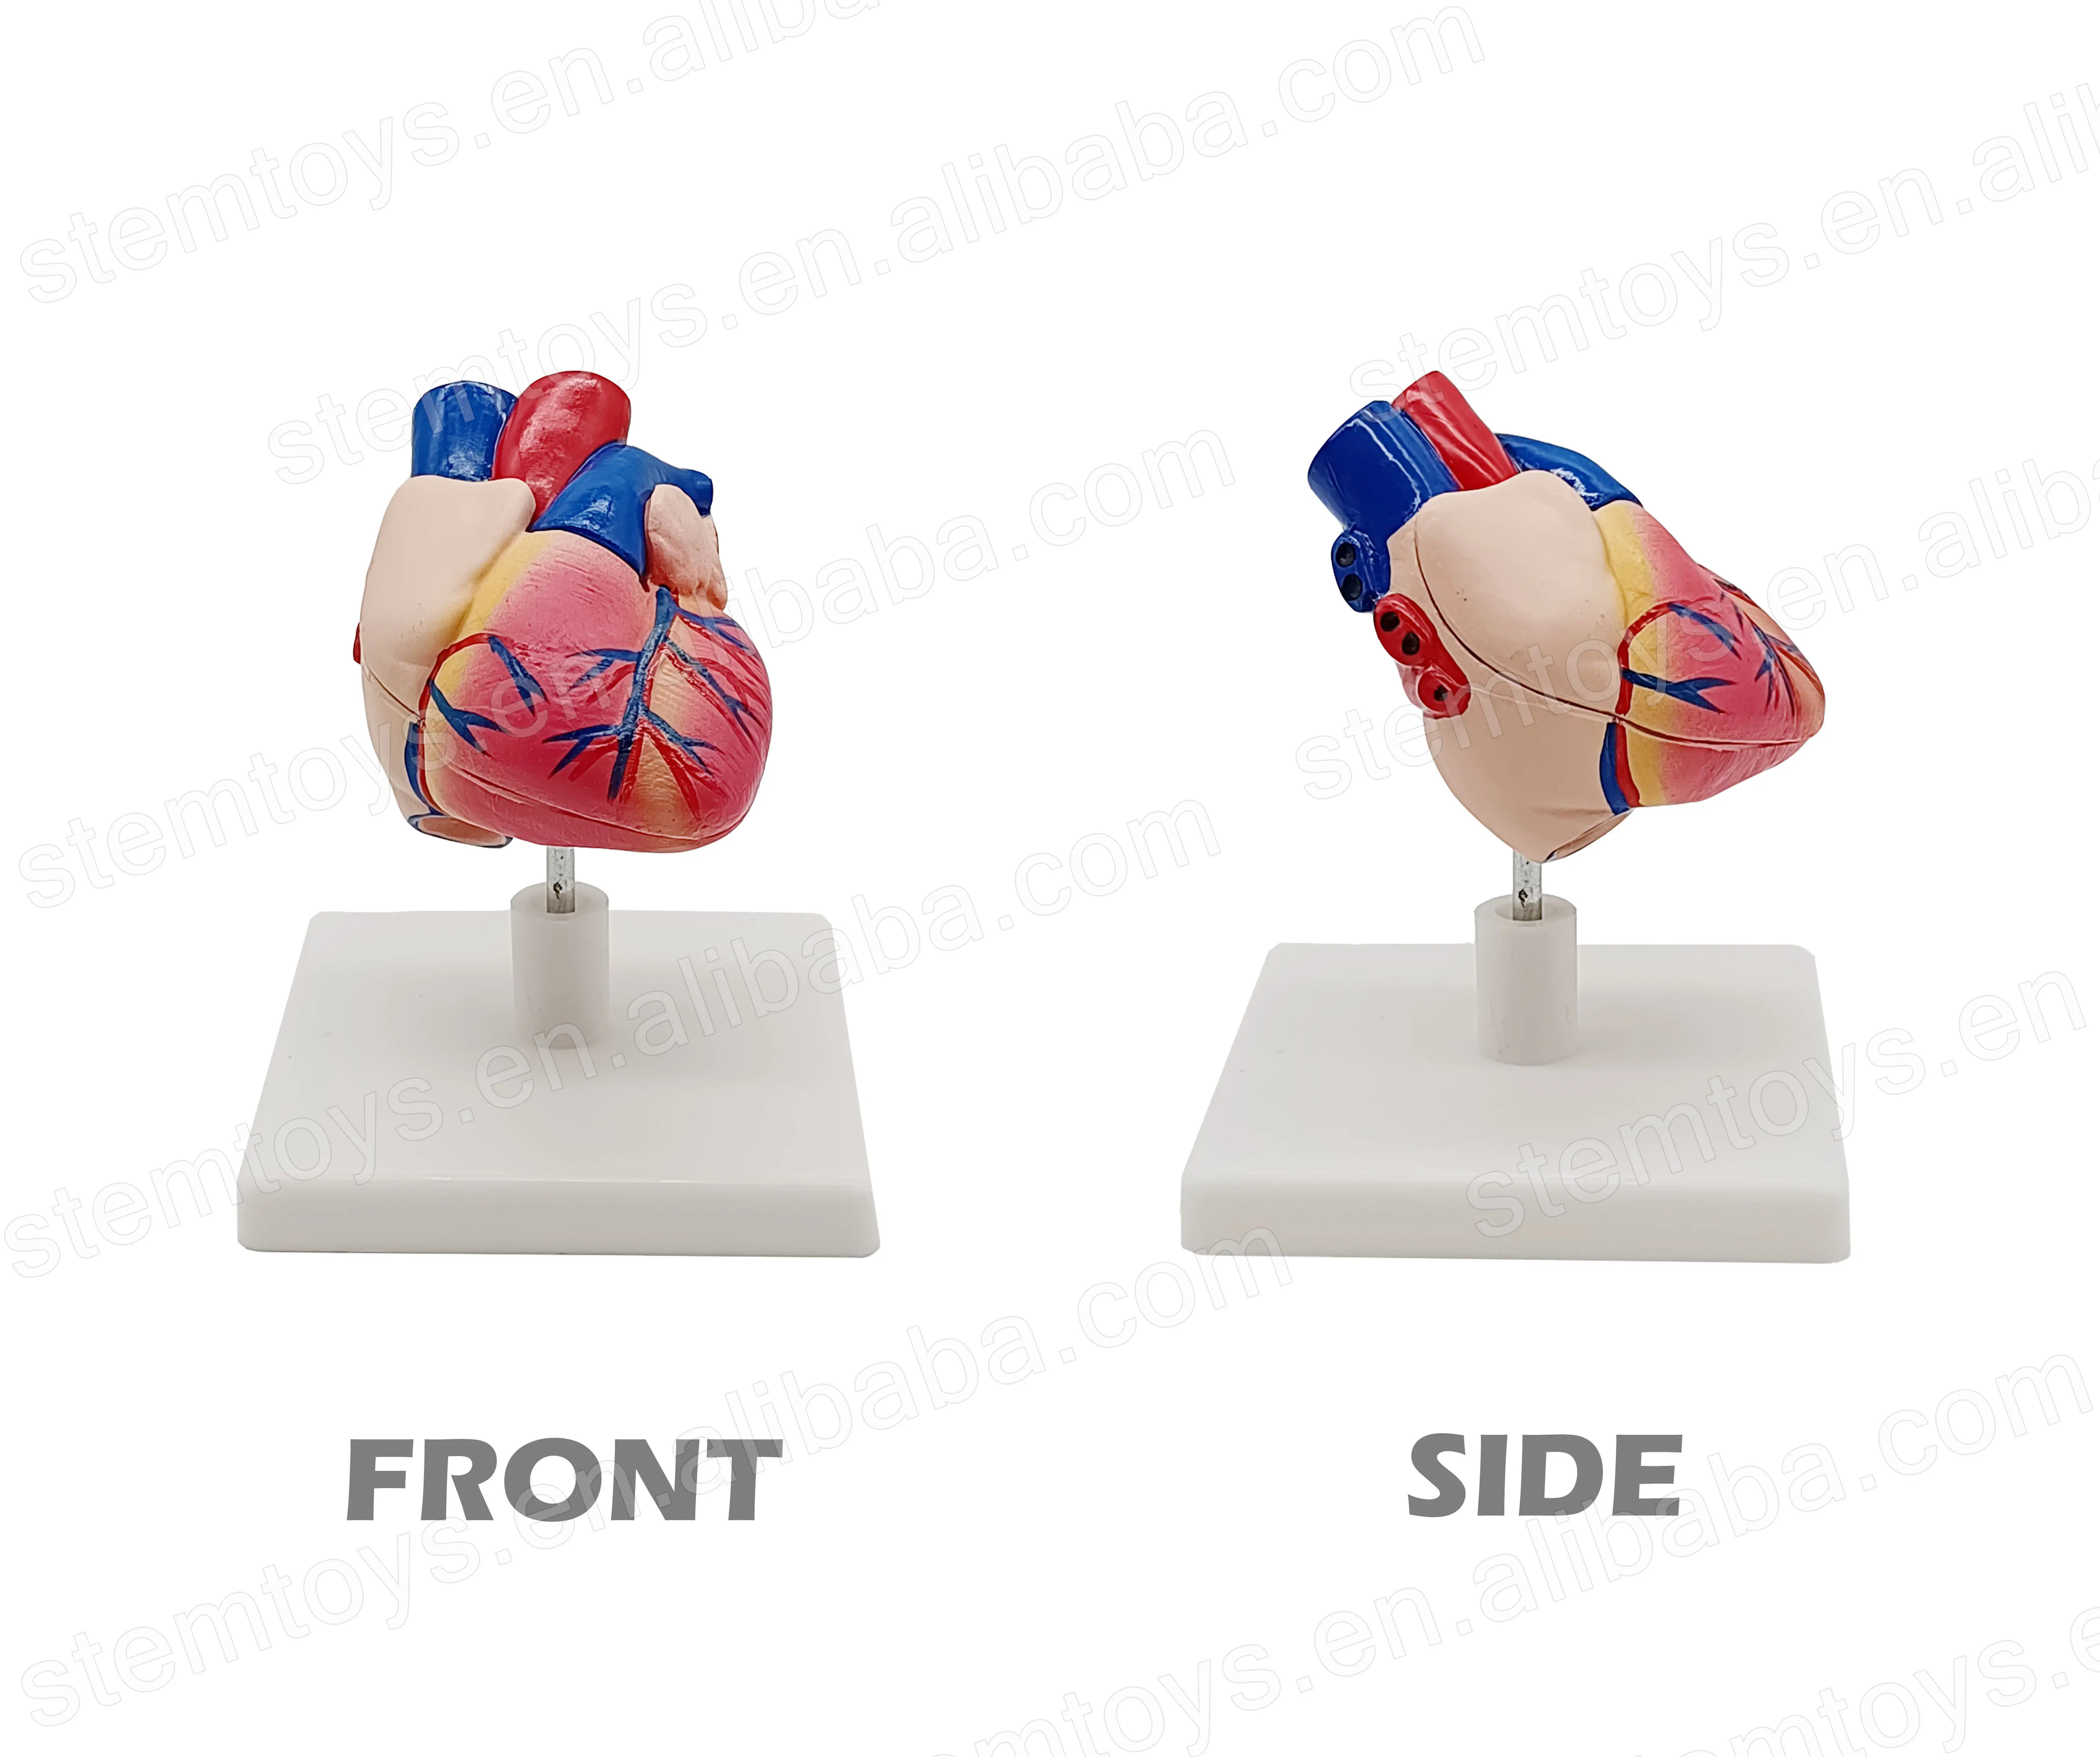 Anatomi İnsan kalp yaşam boyutu modeli sökülebilir kalp organ yapısı modeli öğretim için kök eğitim modeli okul çocukları için